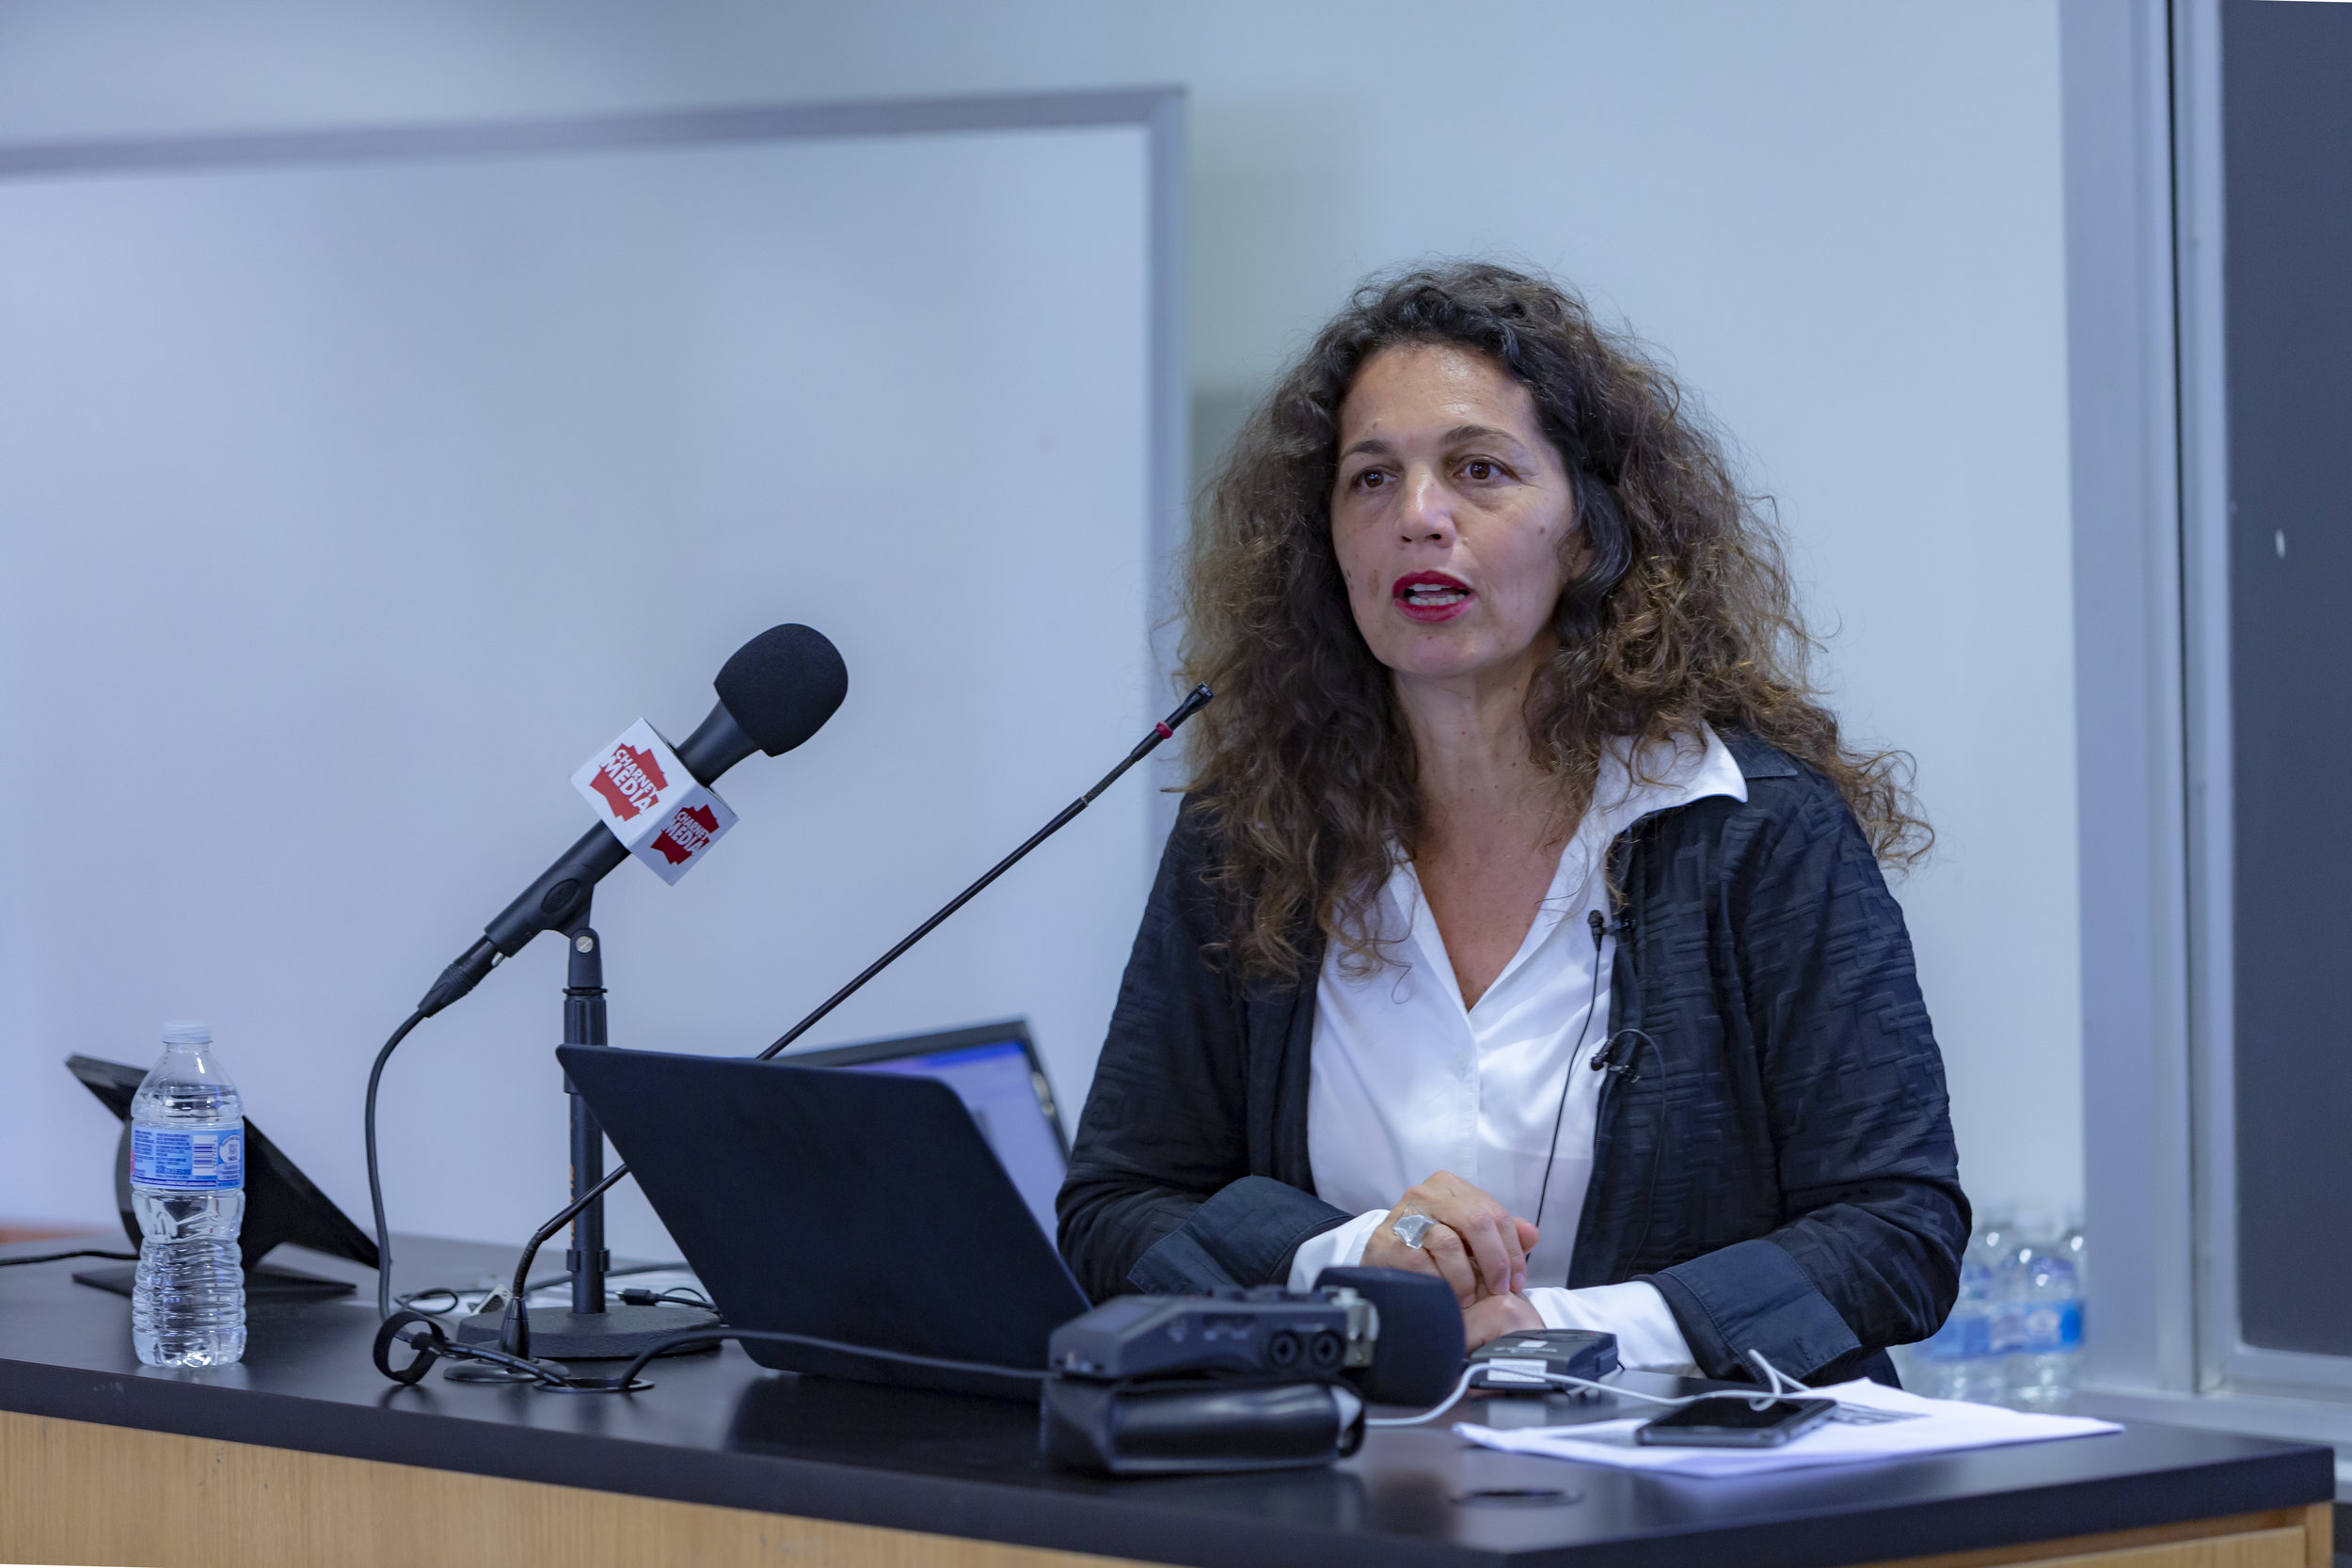 Hila Oren, CEO, The Tel Aviv Foundation; Founder, Tel Aviv Global